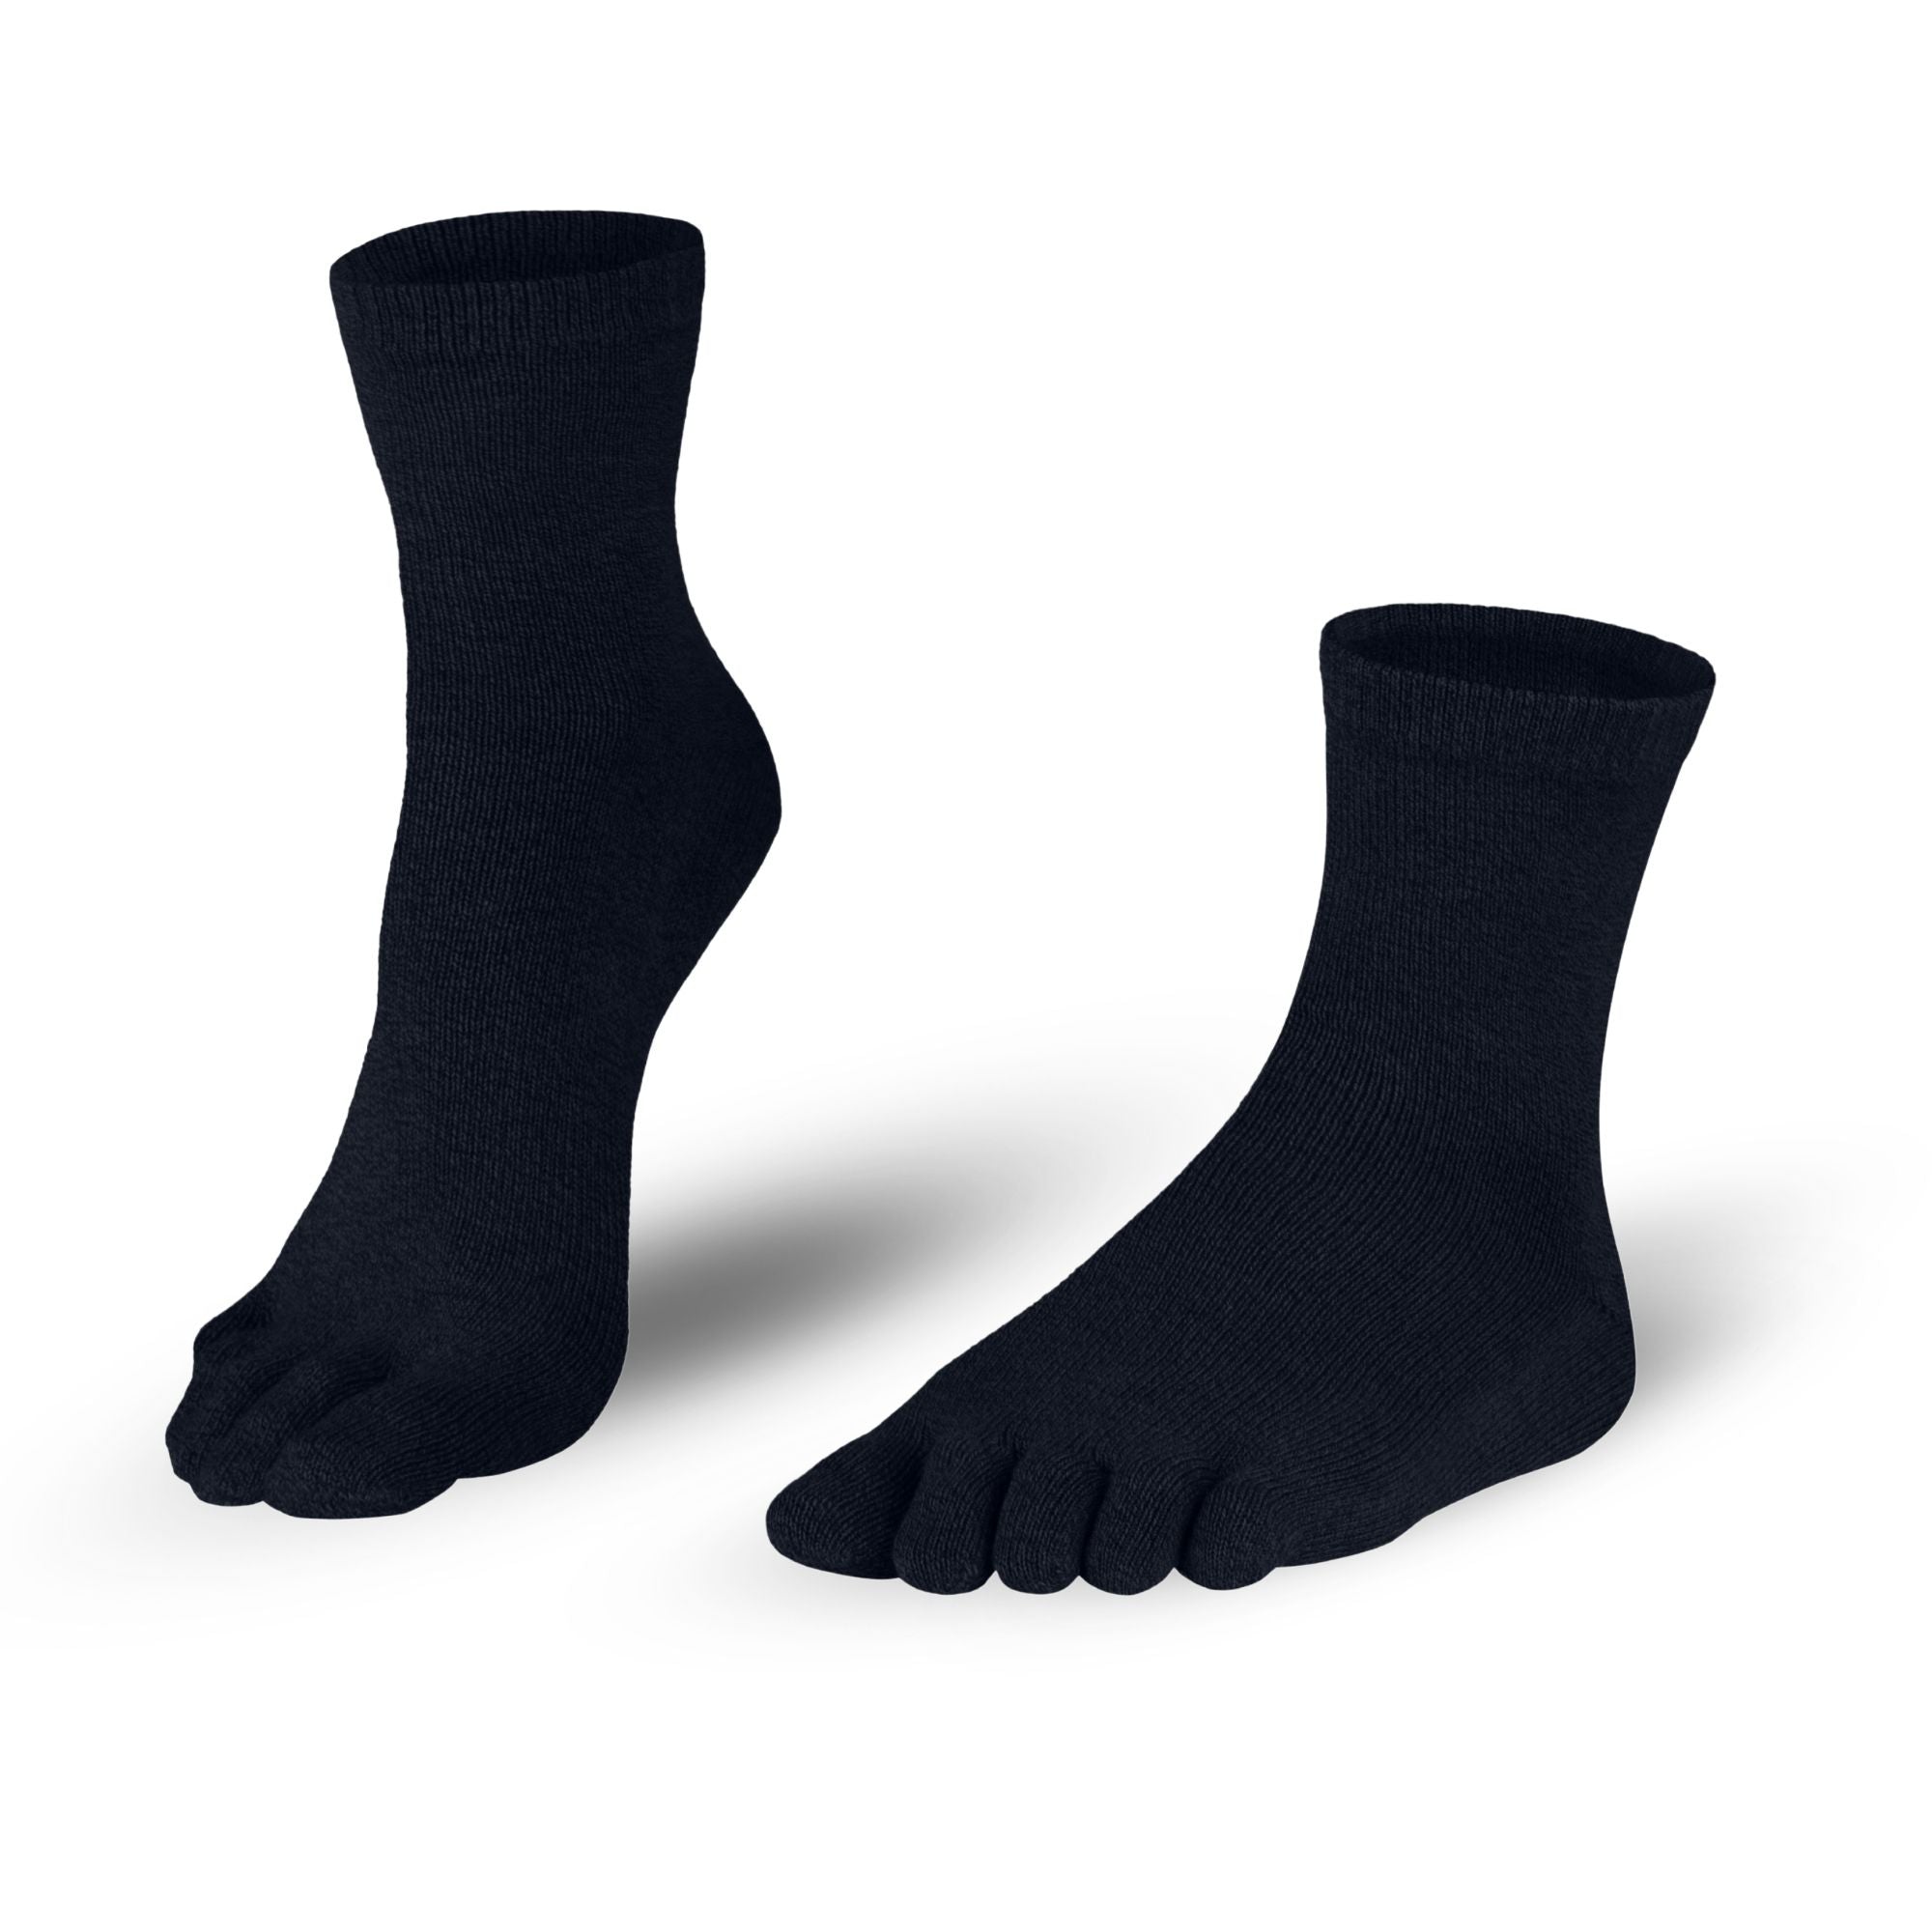 Knitido Silver Protect Midi - court chaussettes à orteils avec fibre d'argent antimicrobienne pour hommes et femmes